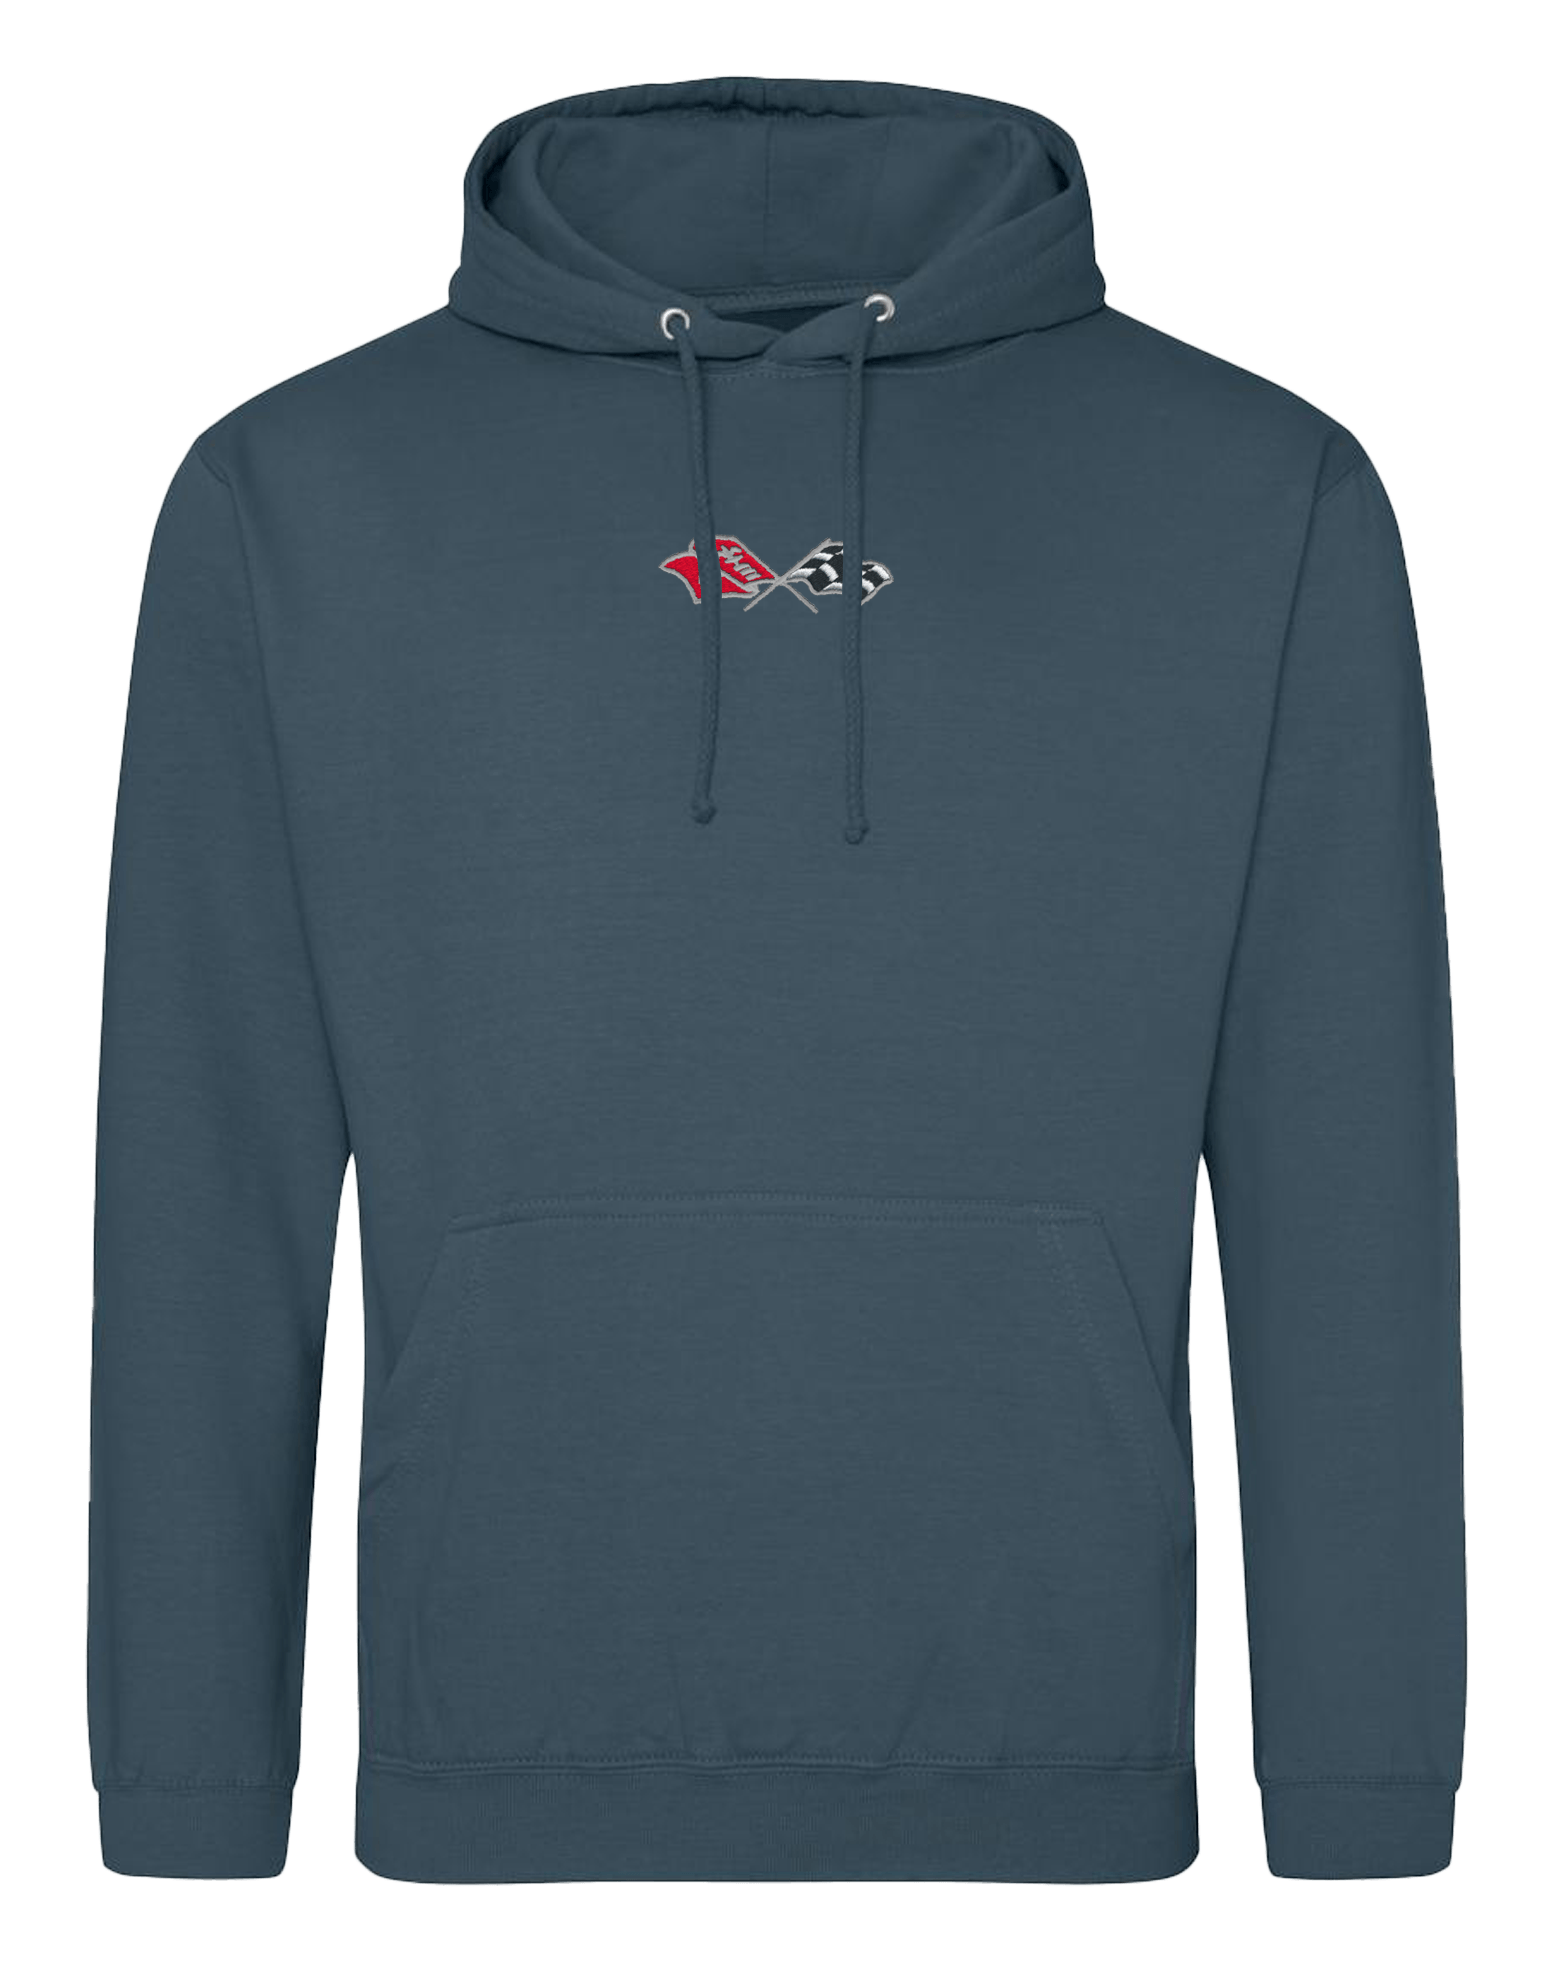 c3-corvette-embroidered-hoodie-cvr60001103-3-corvette-store-online